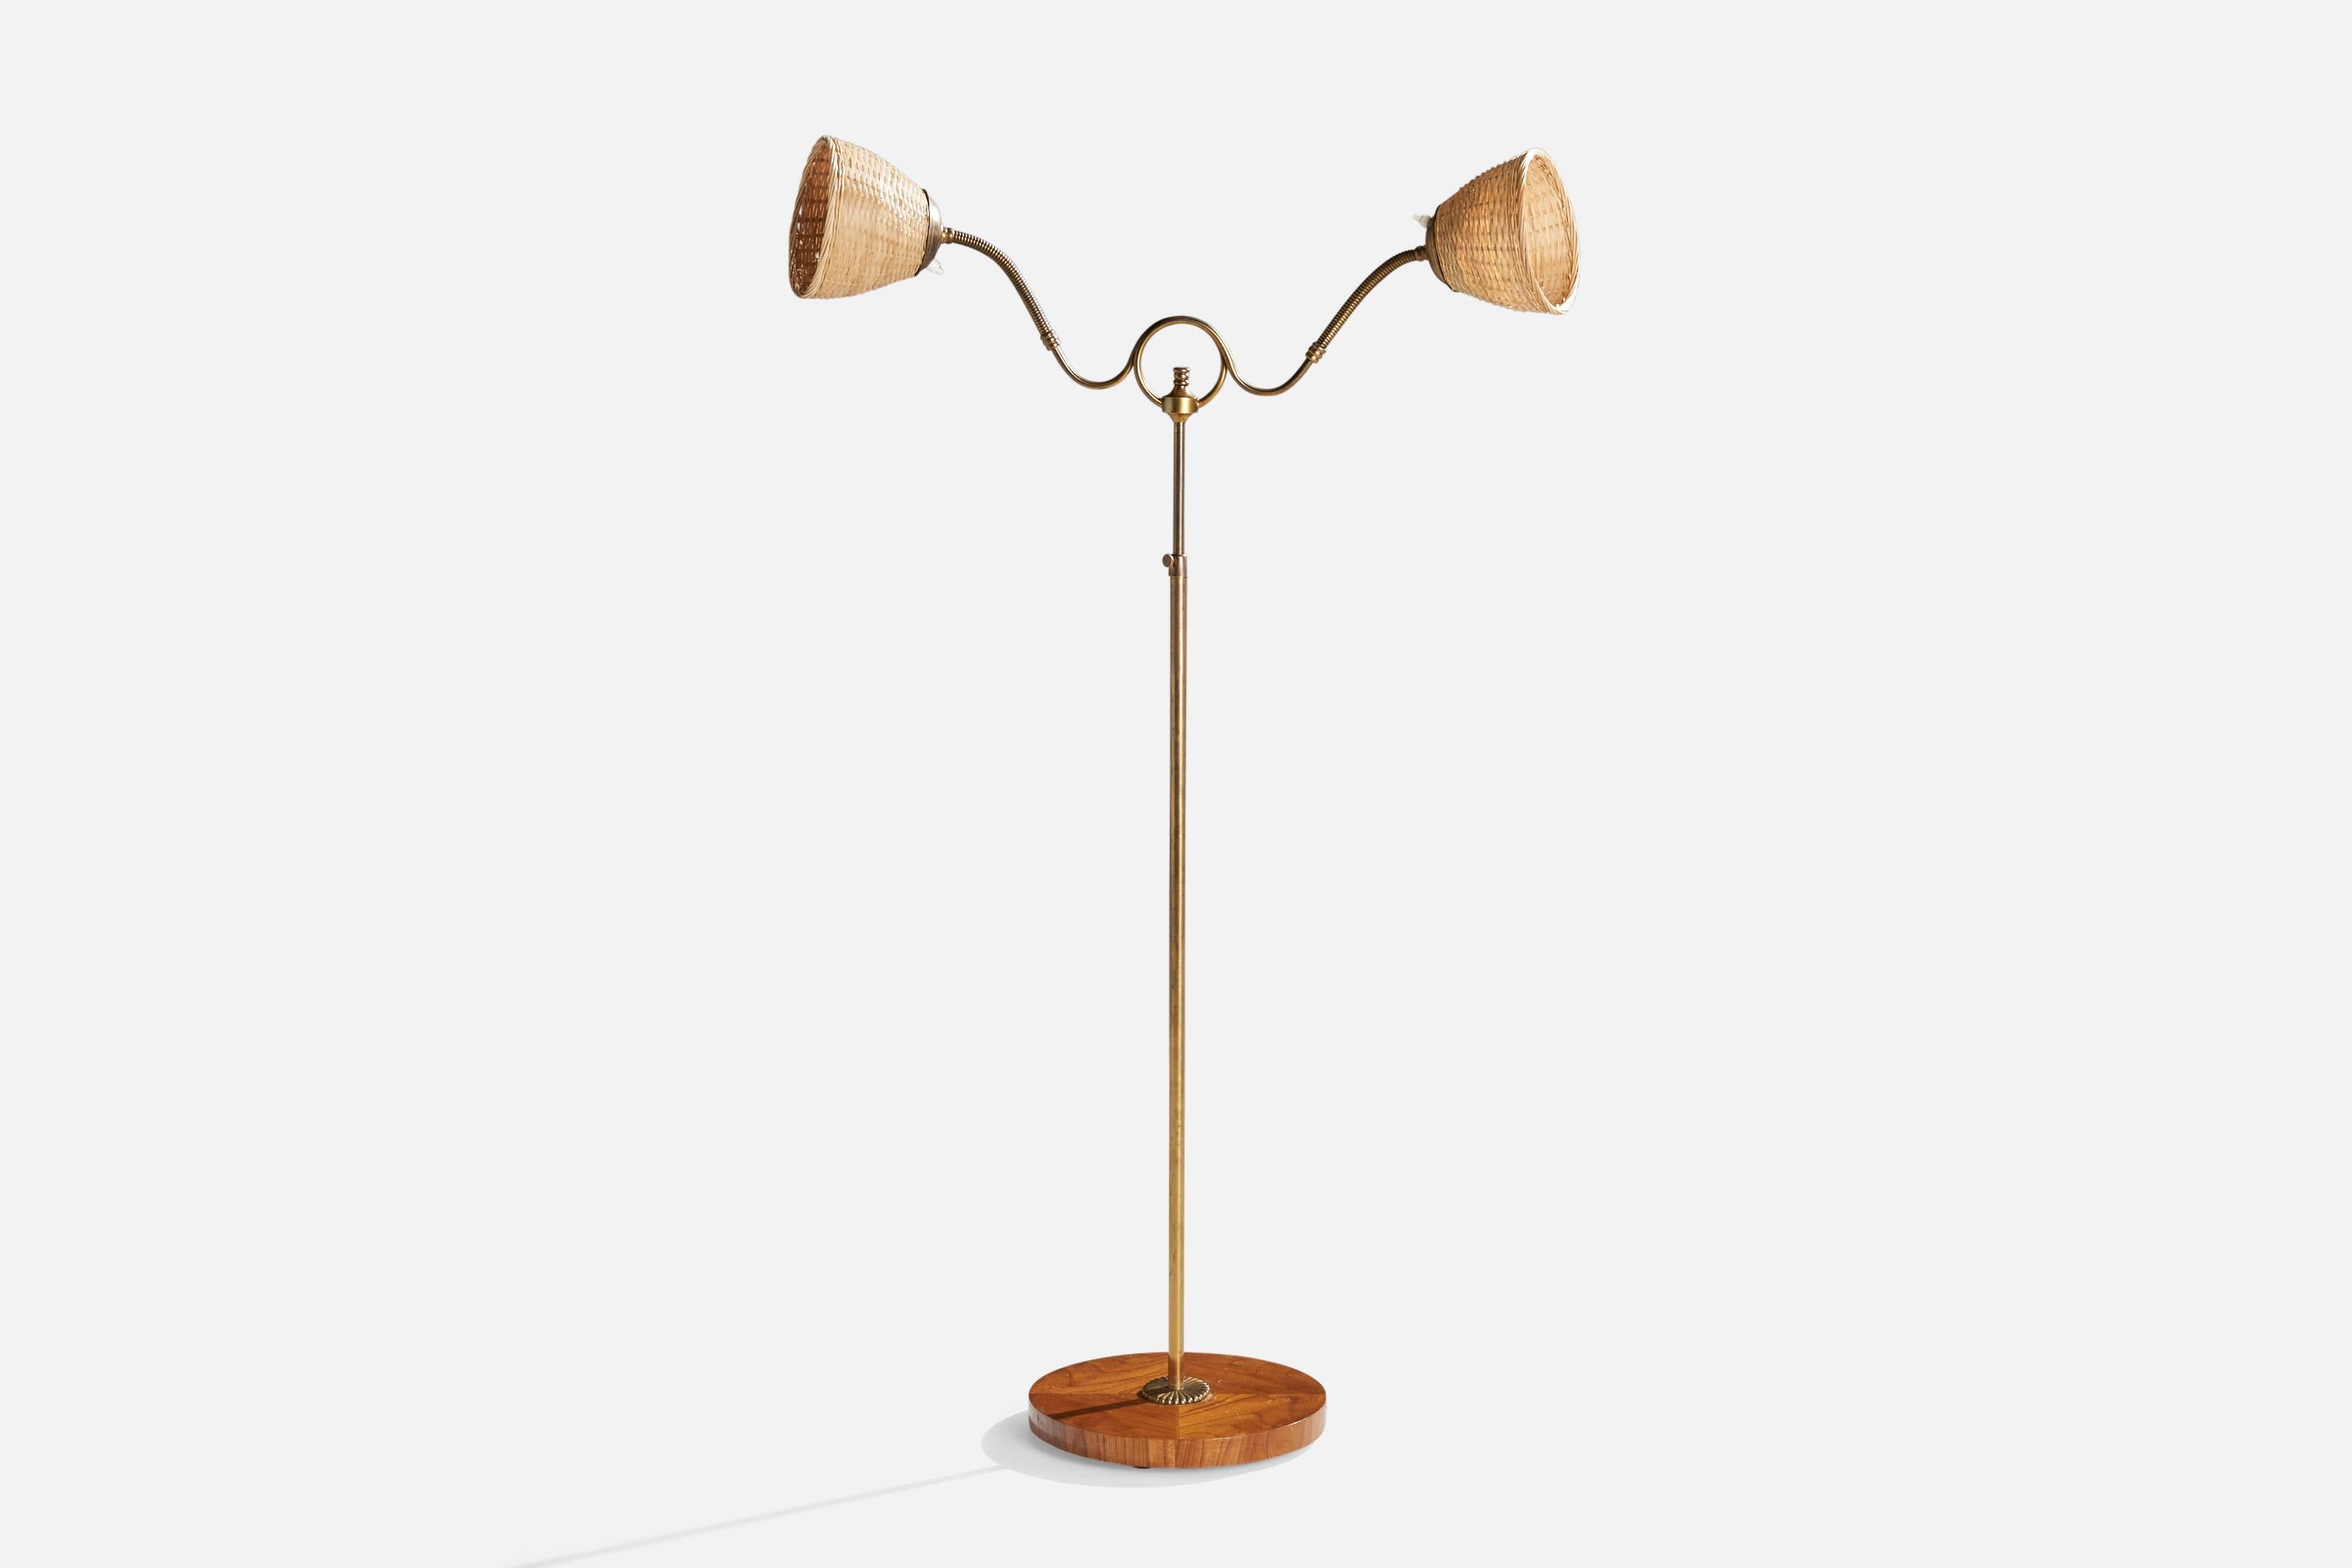 Eine verstellbare Stehlampe aus Messing, Rattan und Ulme, entworfen und hergestellt in Schweden, 1940er Jahre.

Gesamtabmessungen (Zoll): 60